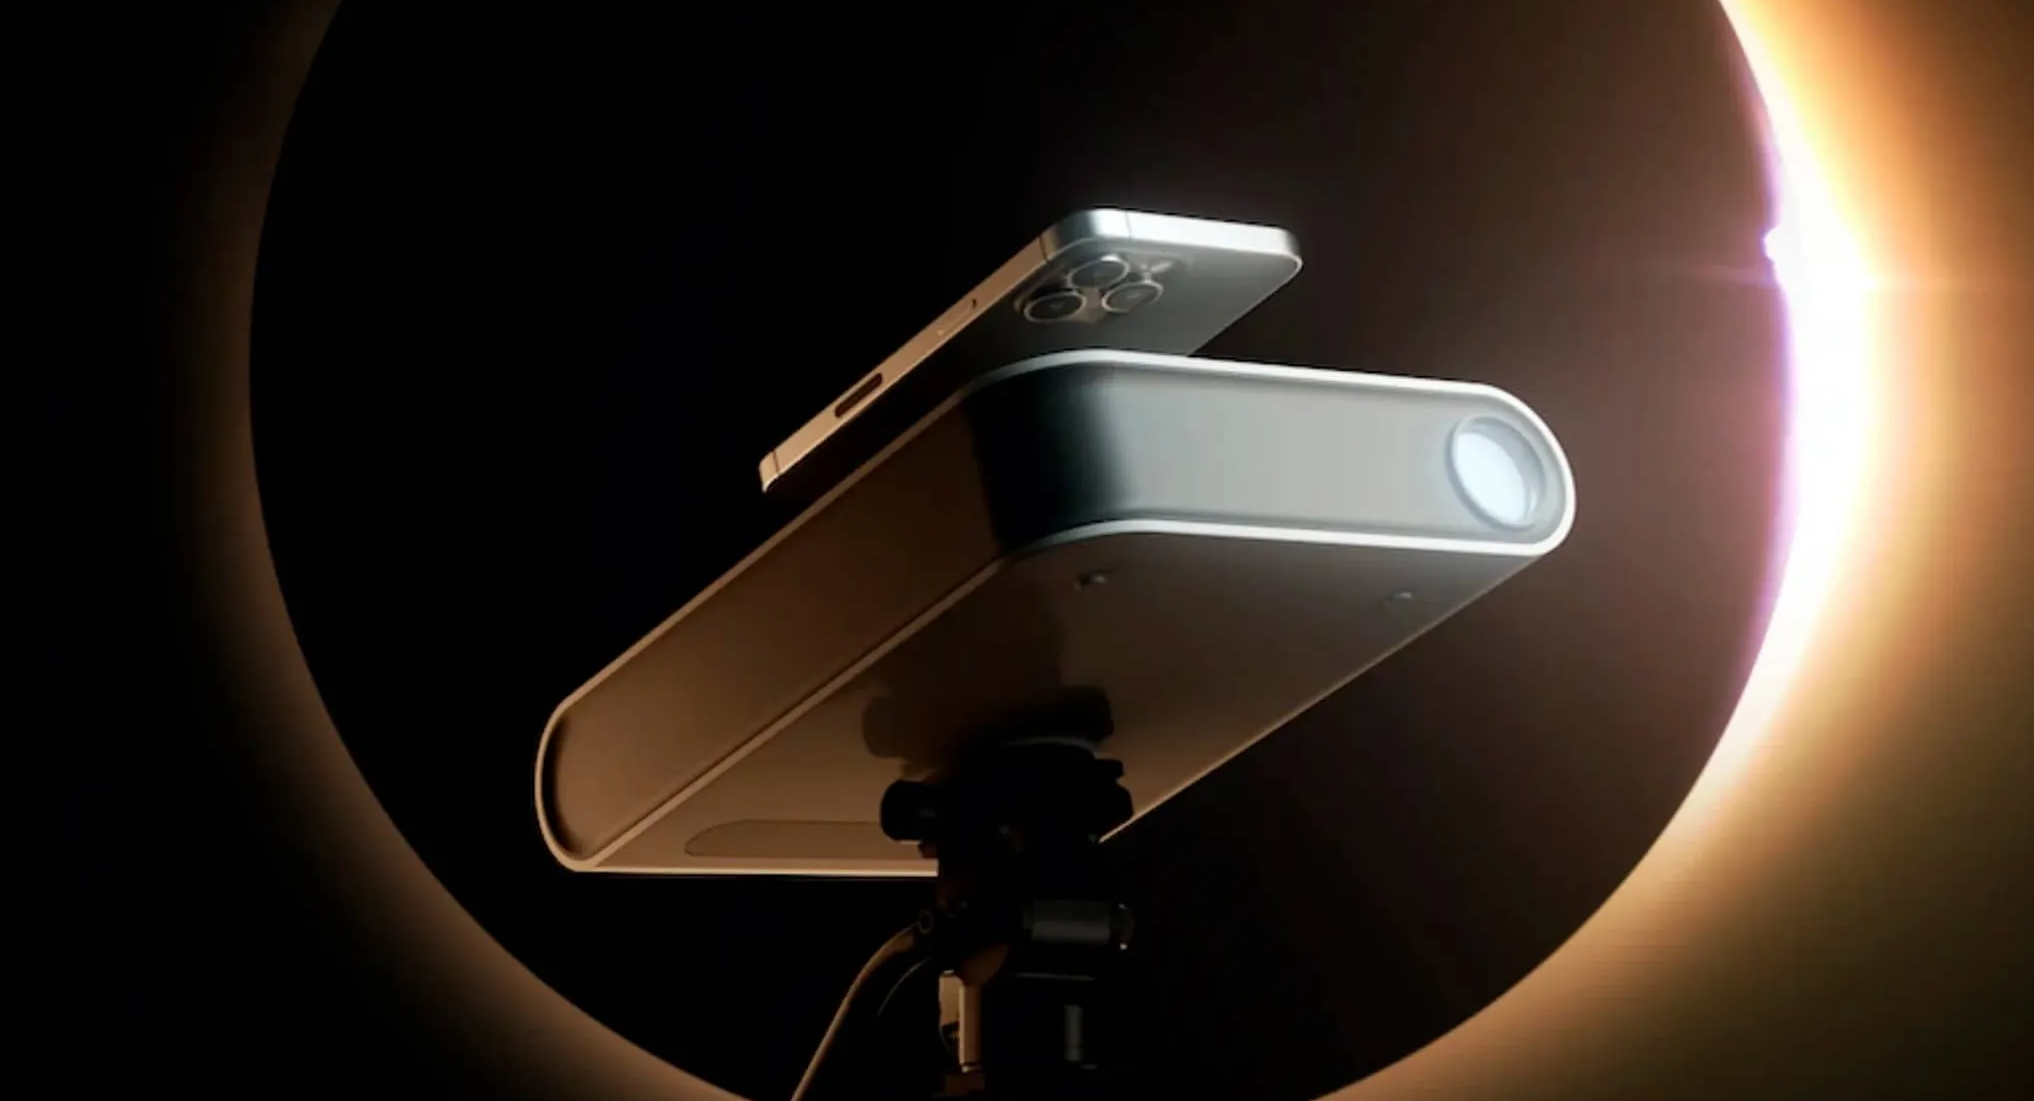 Cтартап Vaonis создал первый в мире телескоп для смартфона